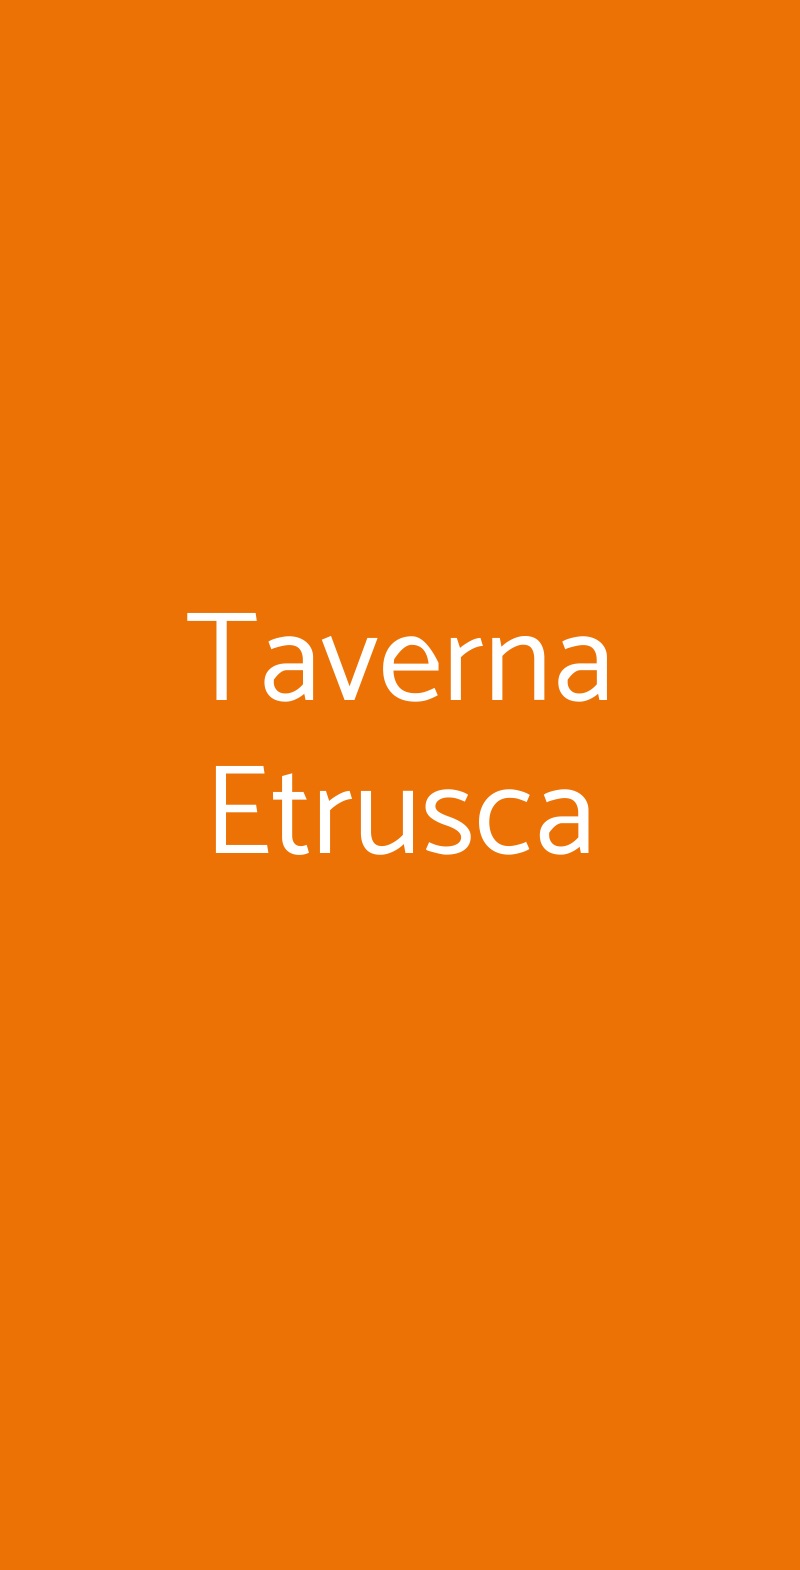 Taverna Etrusca Sorano menù 1 pagina